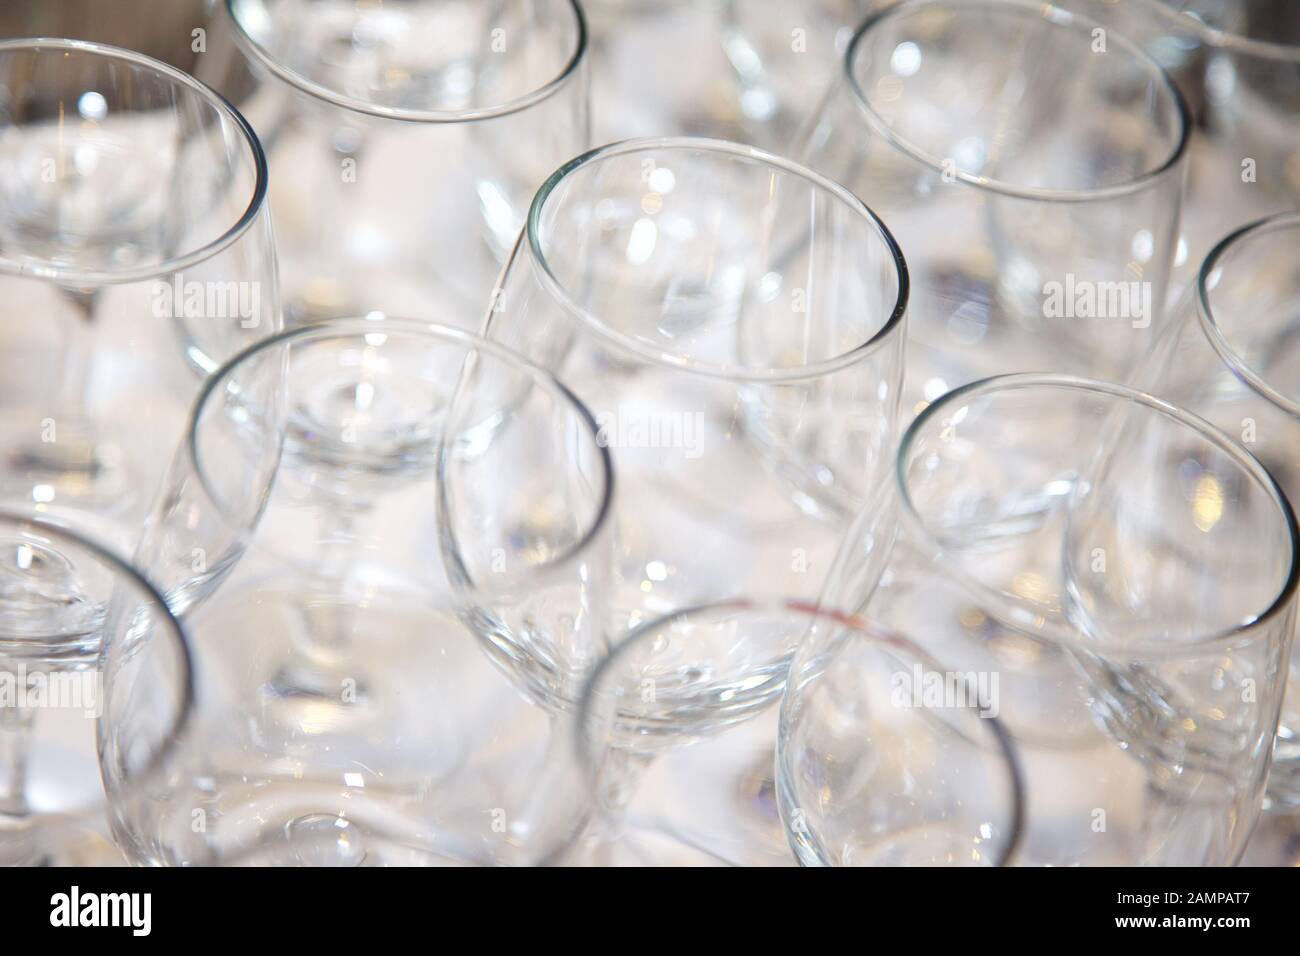 Sammlung von leeren Gläser auf eine Bar oder ein Restaurant Zähler angeordnet. Stockfoto